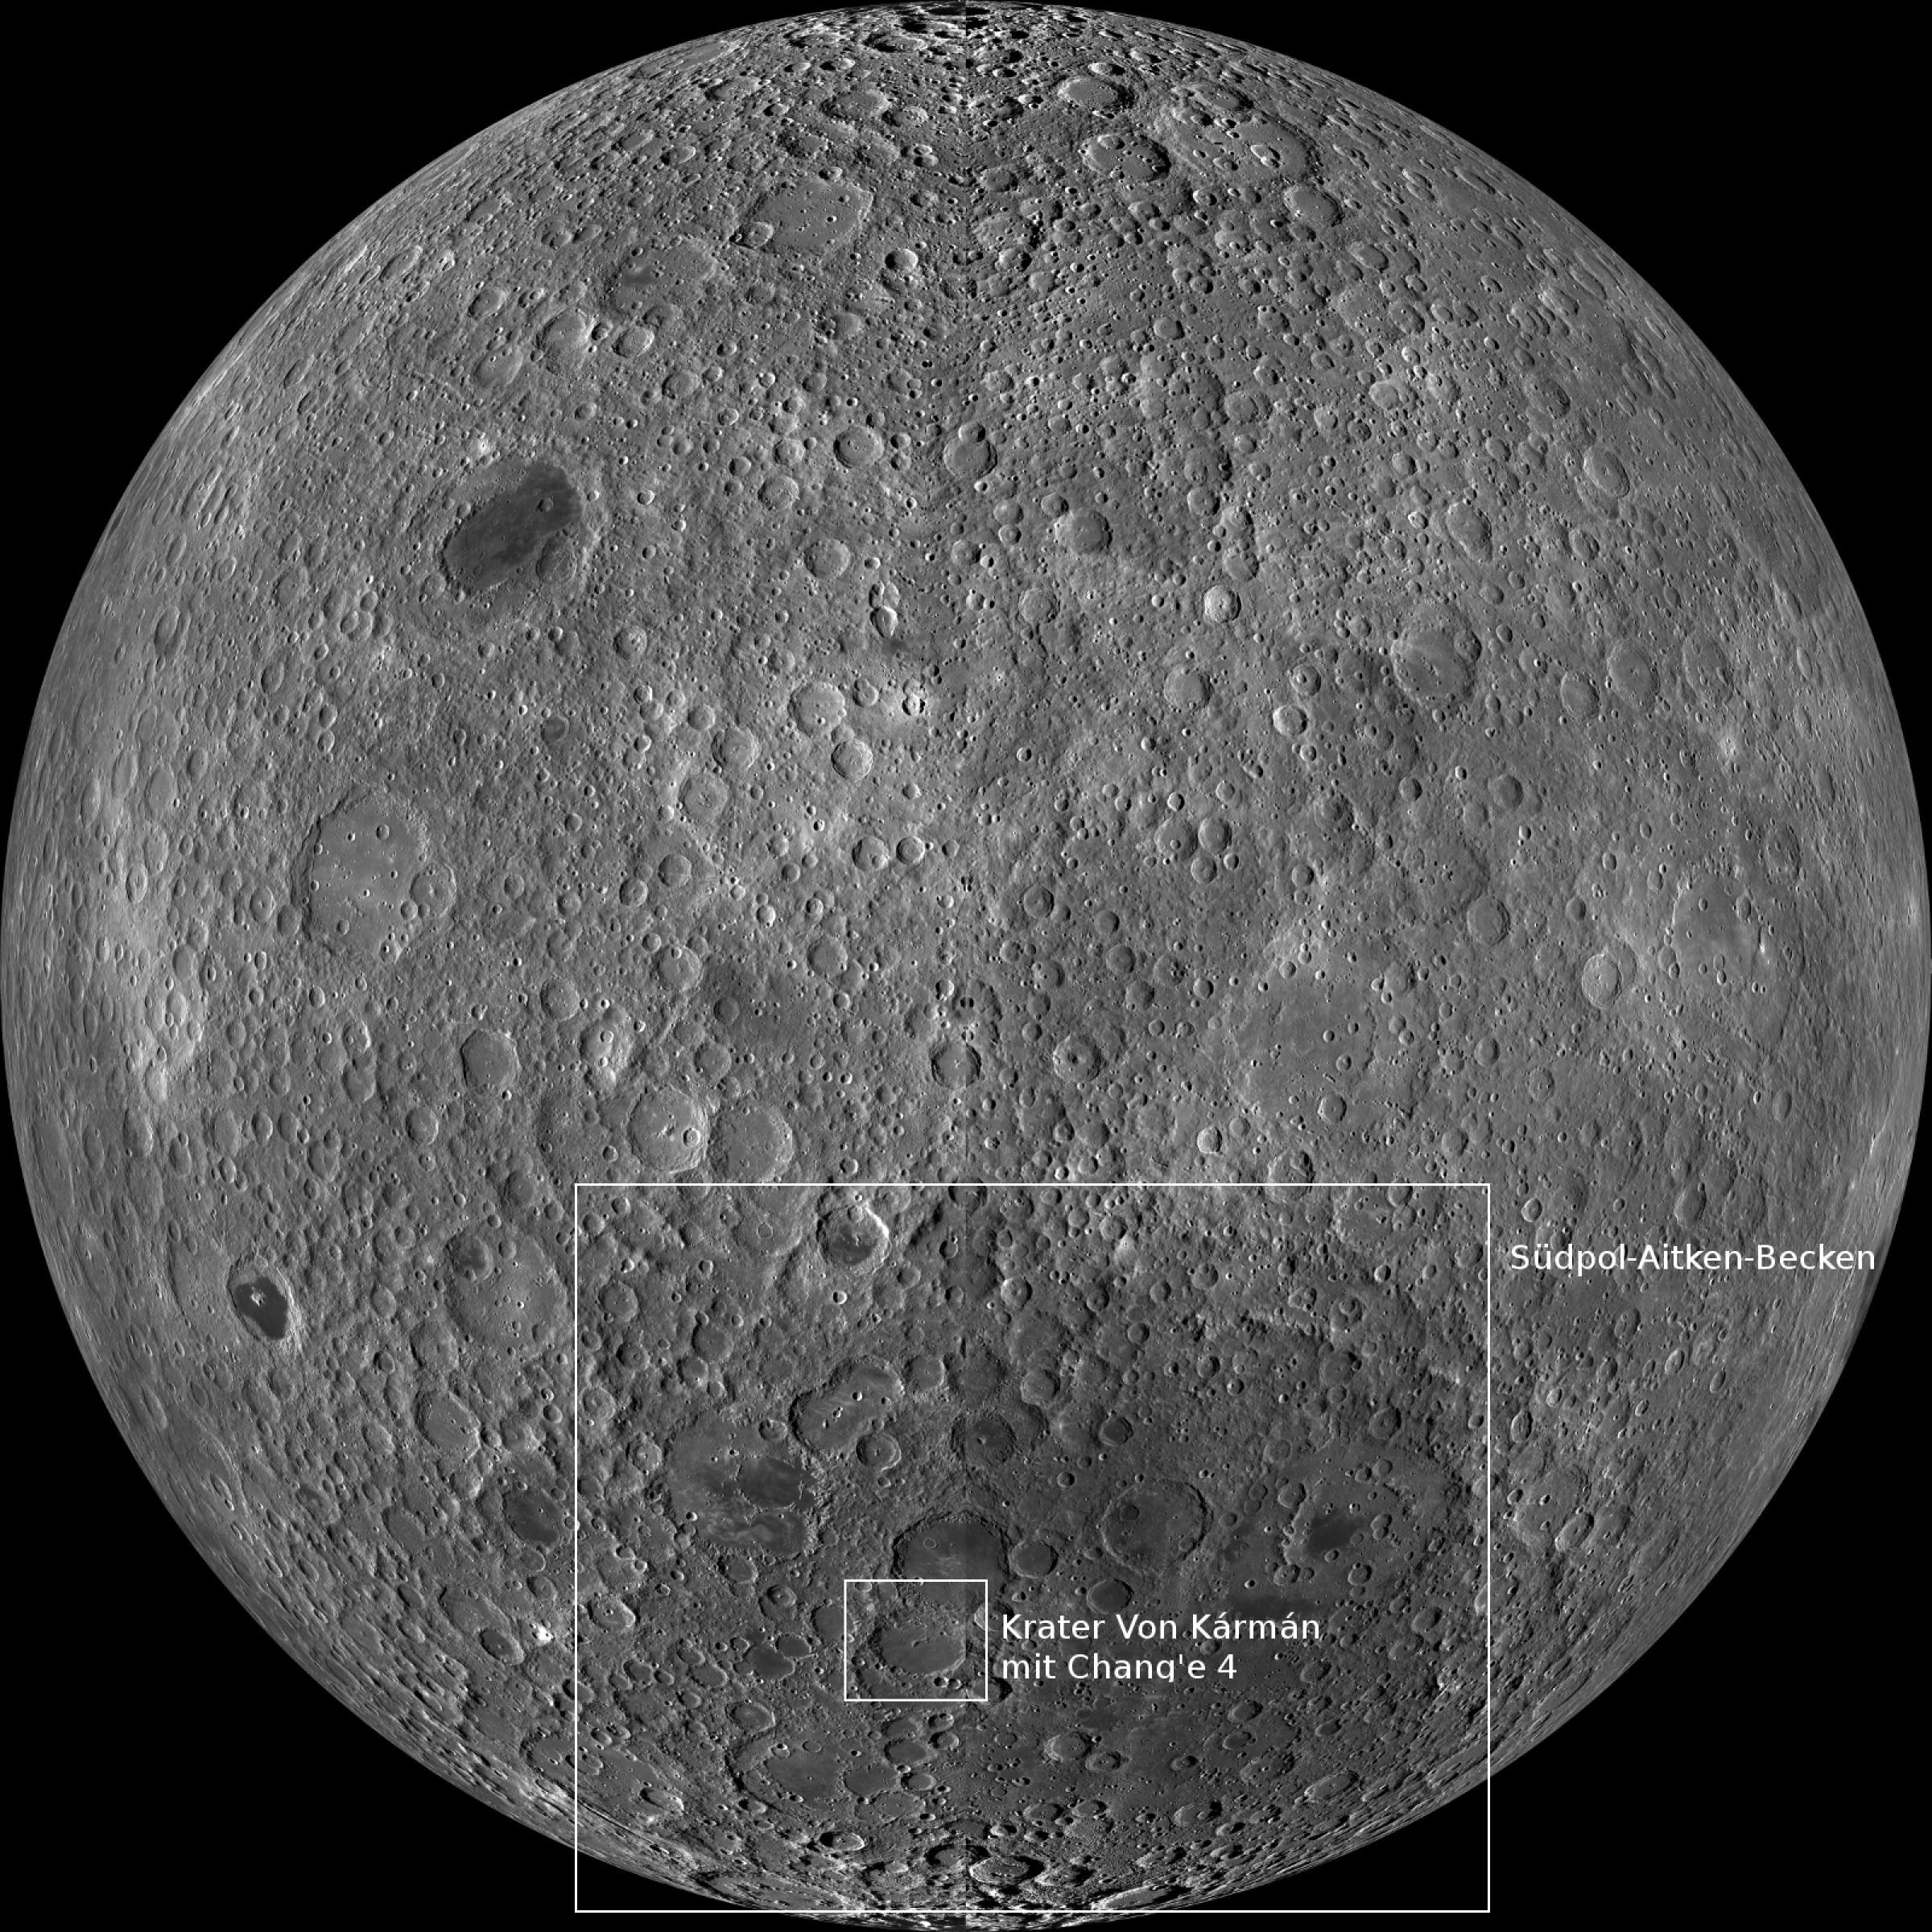 Auf der Mondrückseite liegt das Südpol-Aitken-Becken und darin der Krater Von Kármán